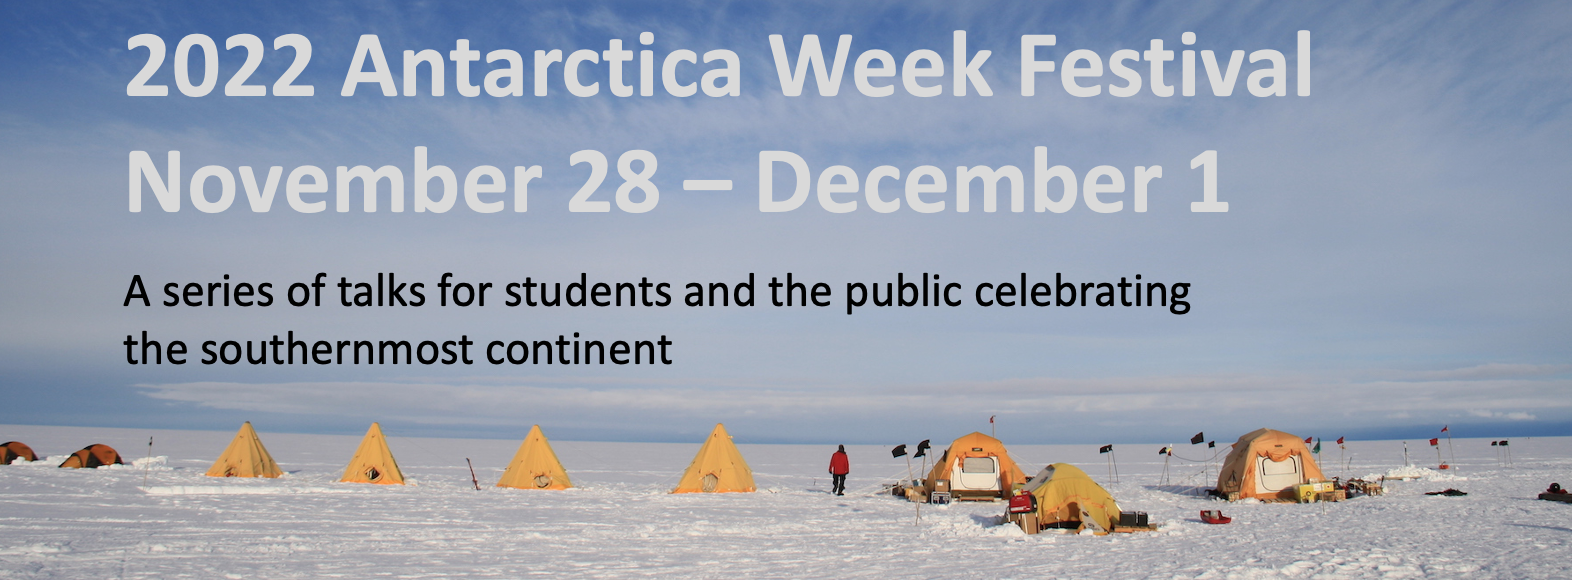 2022 antarctica week